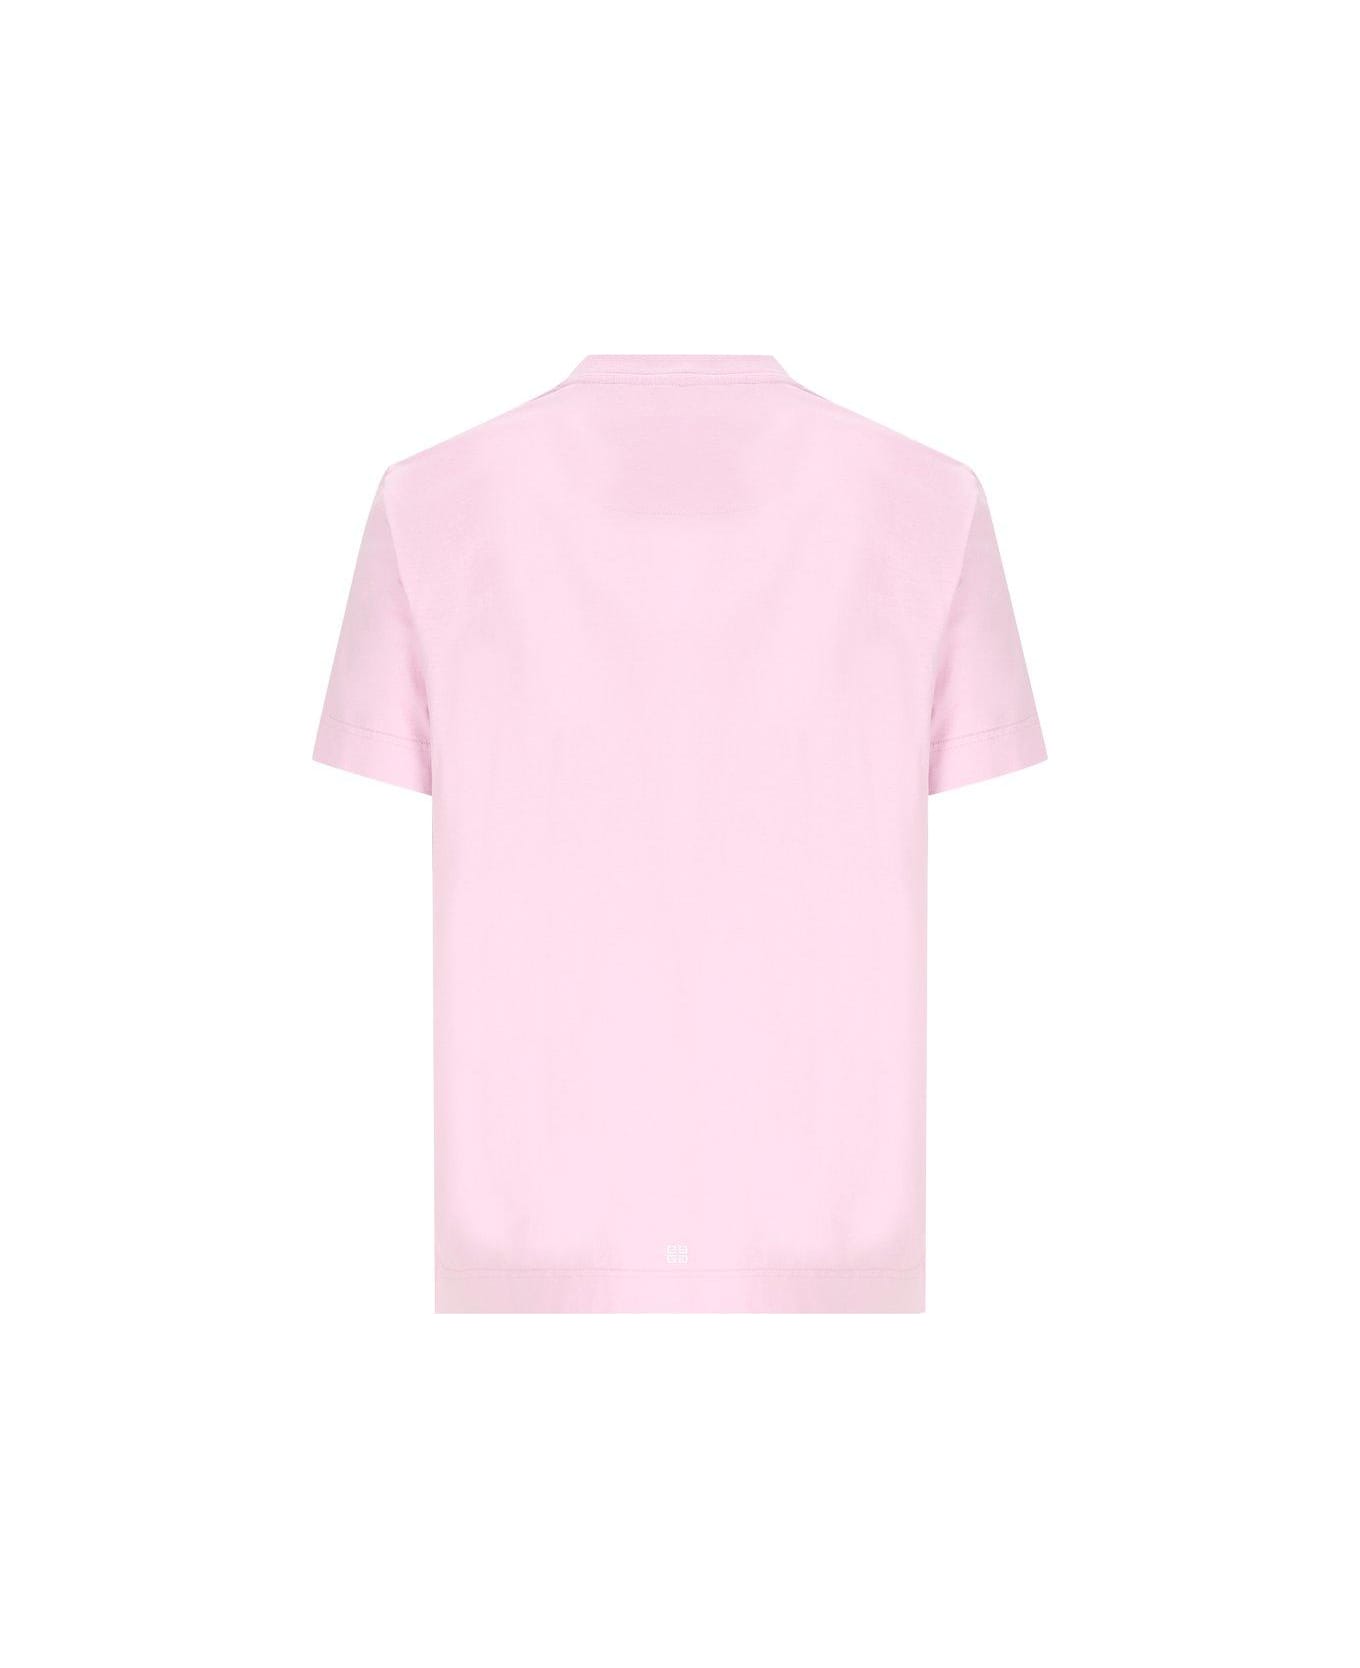 Givenchy Logo Printed Crewneck T-shirt - Rosa